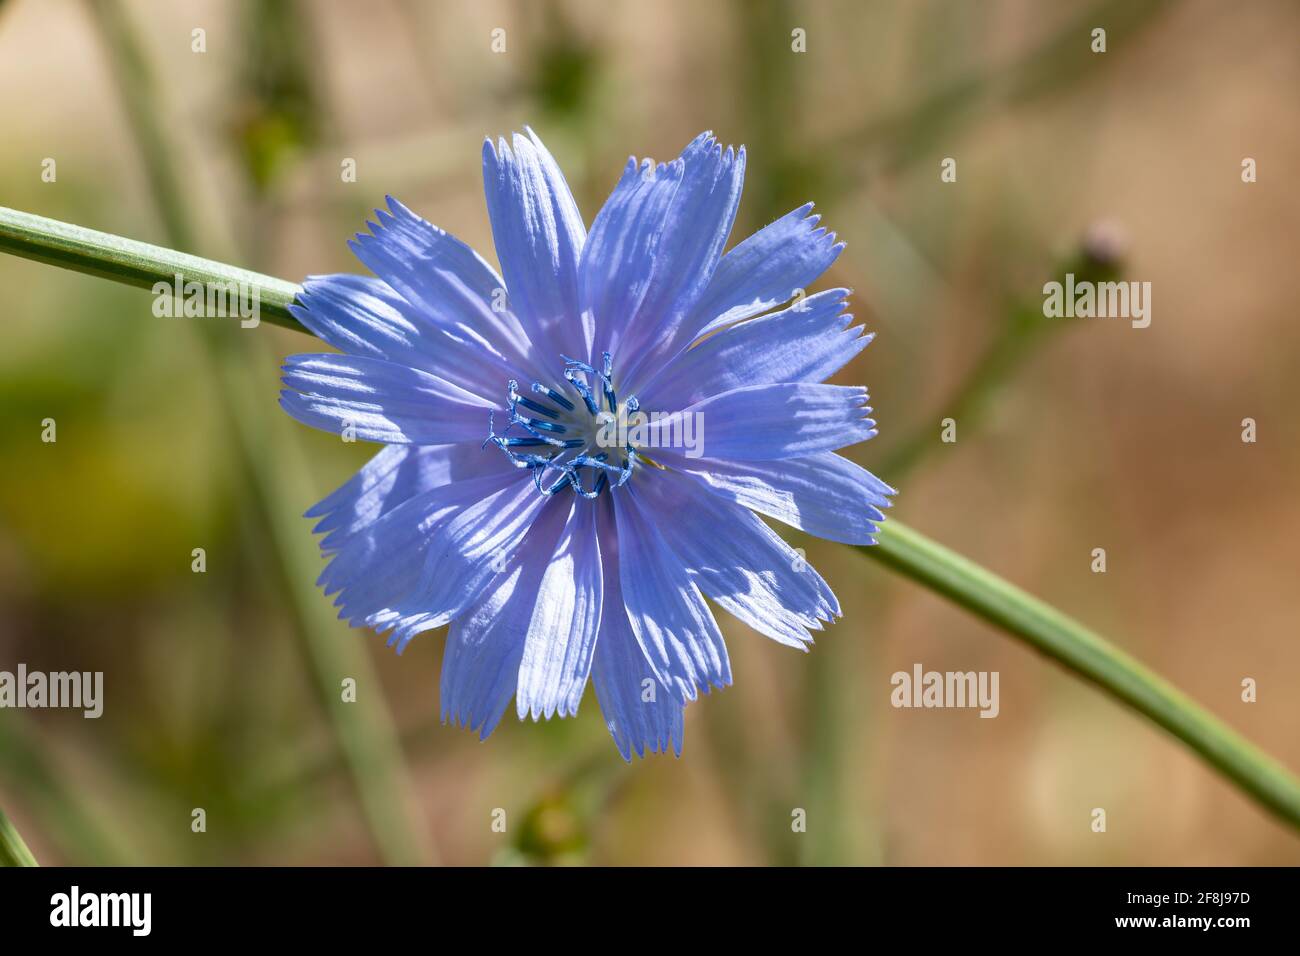 Cichorium intybus, Zichorie ist eine etwas holzige, mehrjährige krautige  Pflanze aus der Familie der Dandelion-Asteraceae, meist mit leuchtend  blauen Blüten Stockfotografie - Alamy